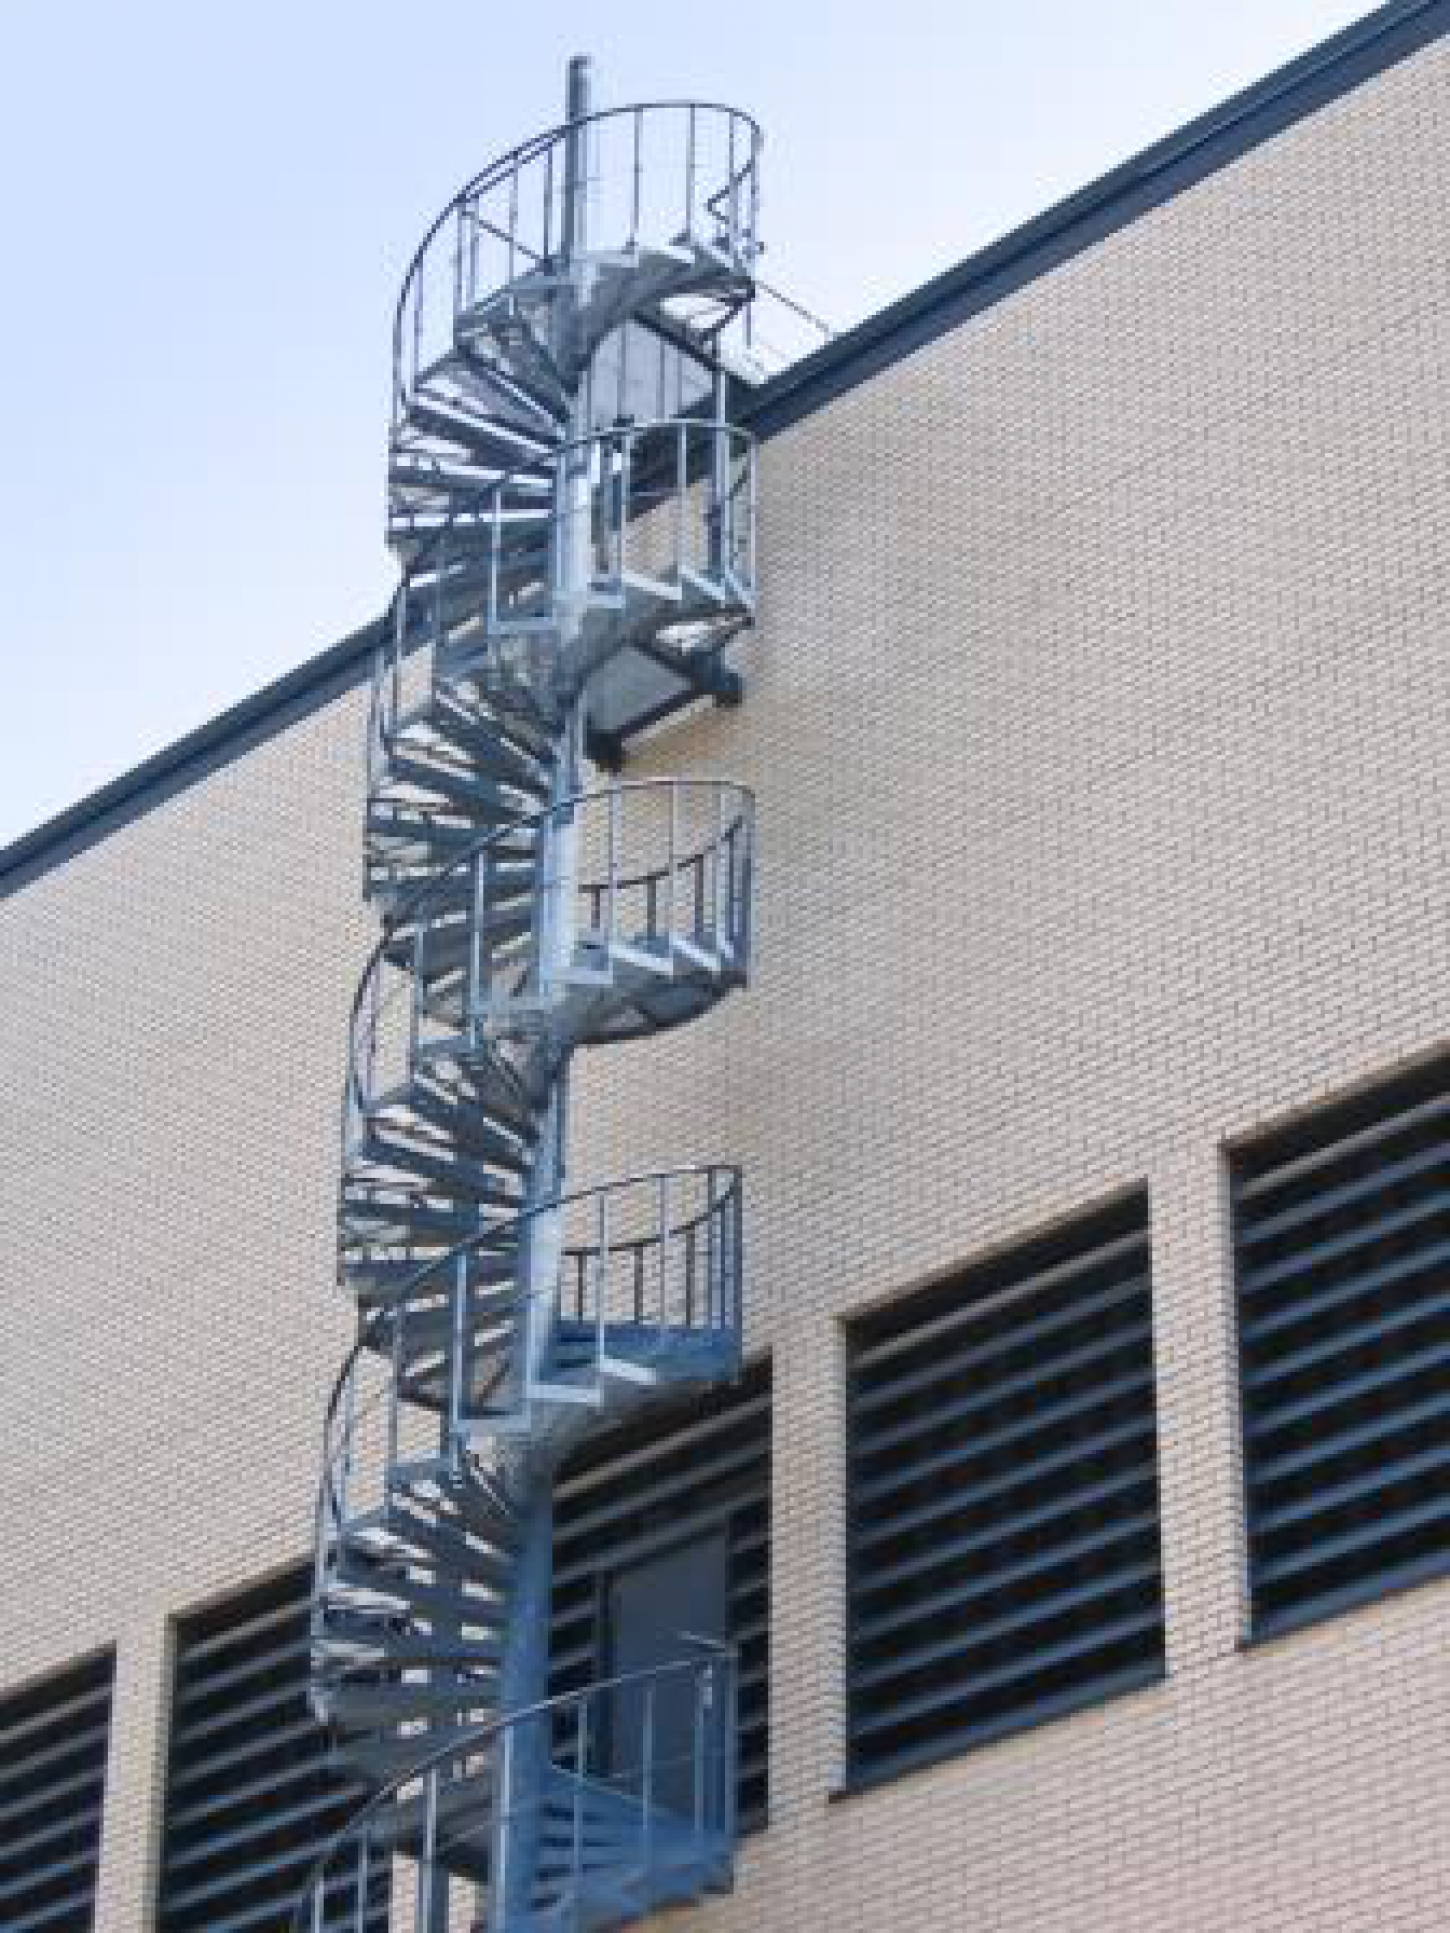 Een keuring van trappen en ladders is verplicht jaarlijks uit te voeren, maar niet noodzakelijk door een keuringsorganisme.